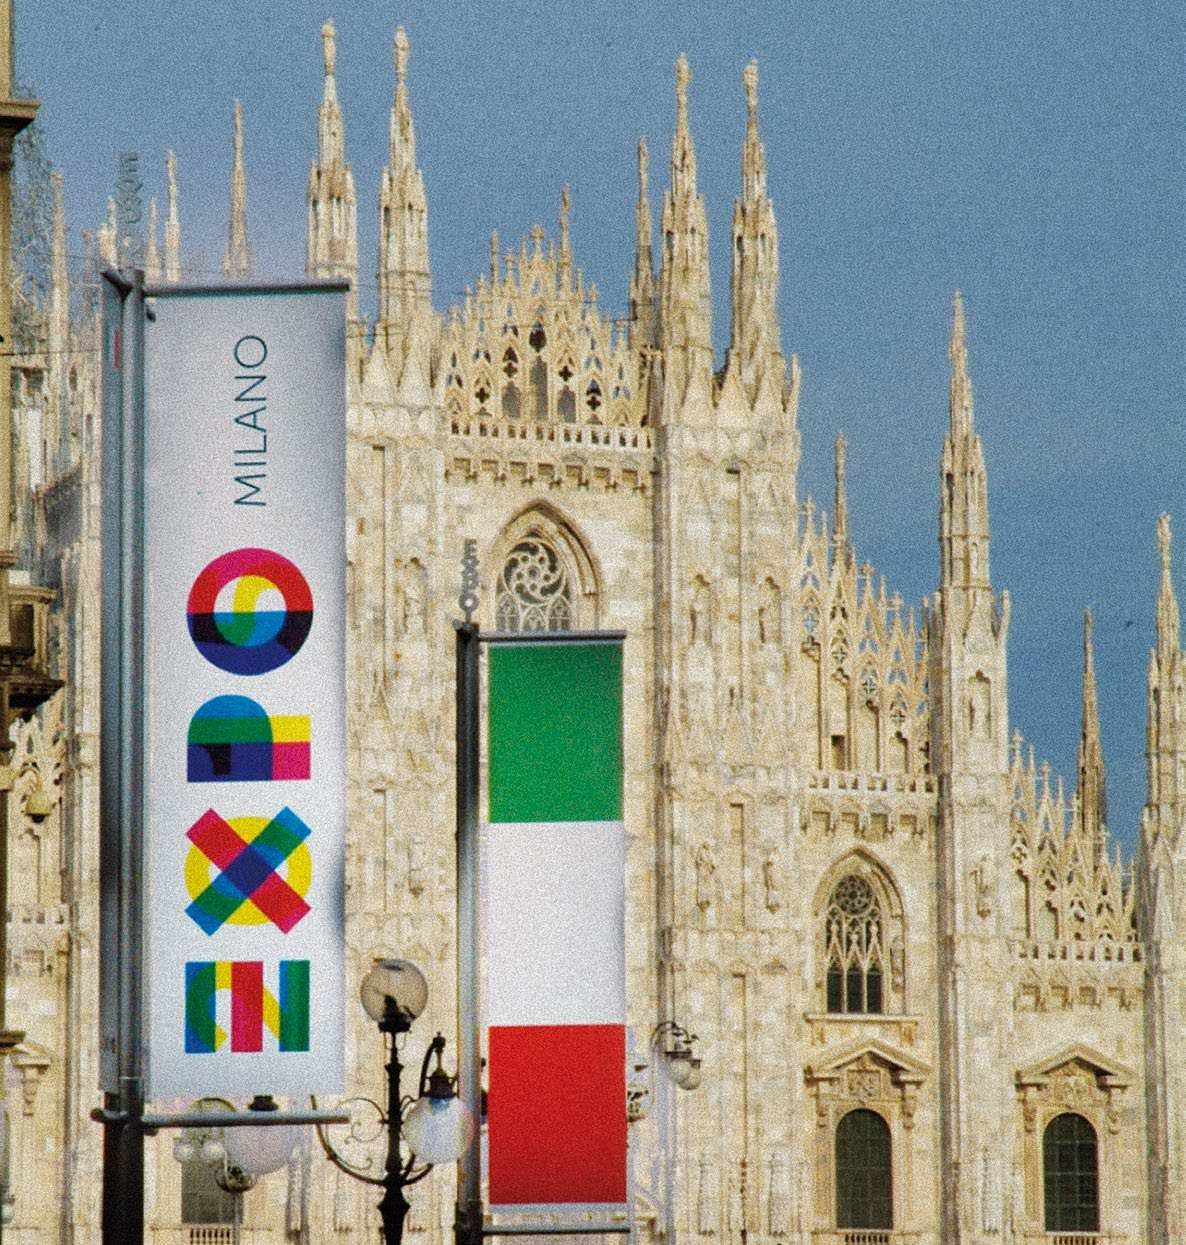 TUTTOFOOD & EXPO 2015 EXPO 2015 accenderà i riflettori del mondo sulla cultura alimentare italiana e TUTTOFOOD, nel 2015, sarà il più importante focus fieristico sul tema: la manifestazione si